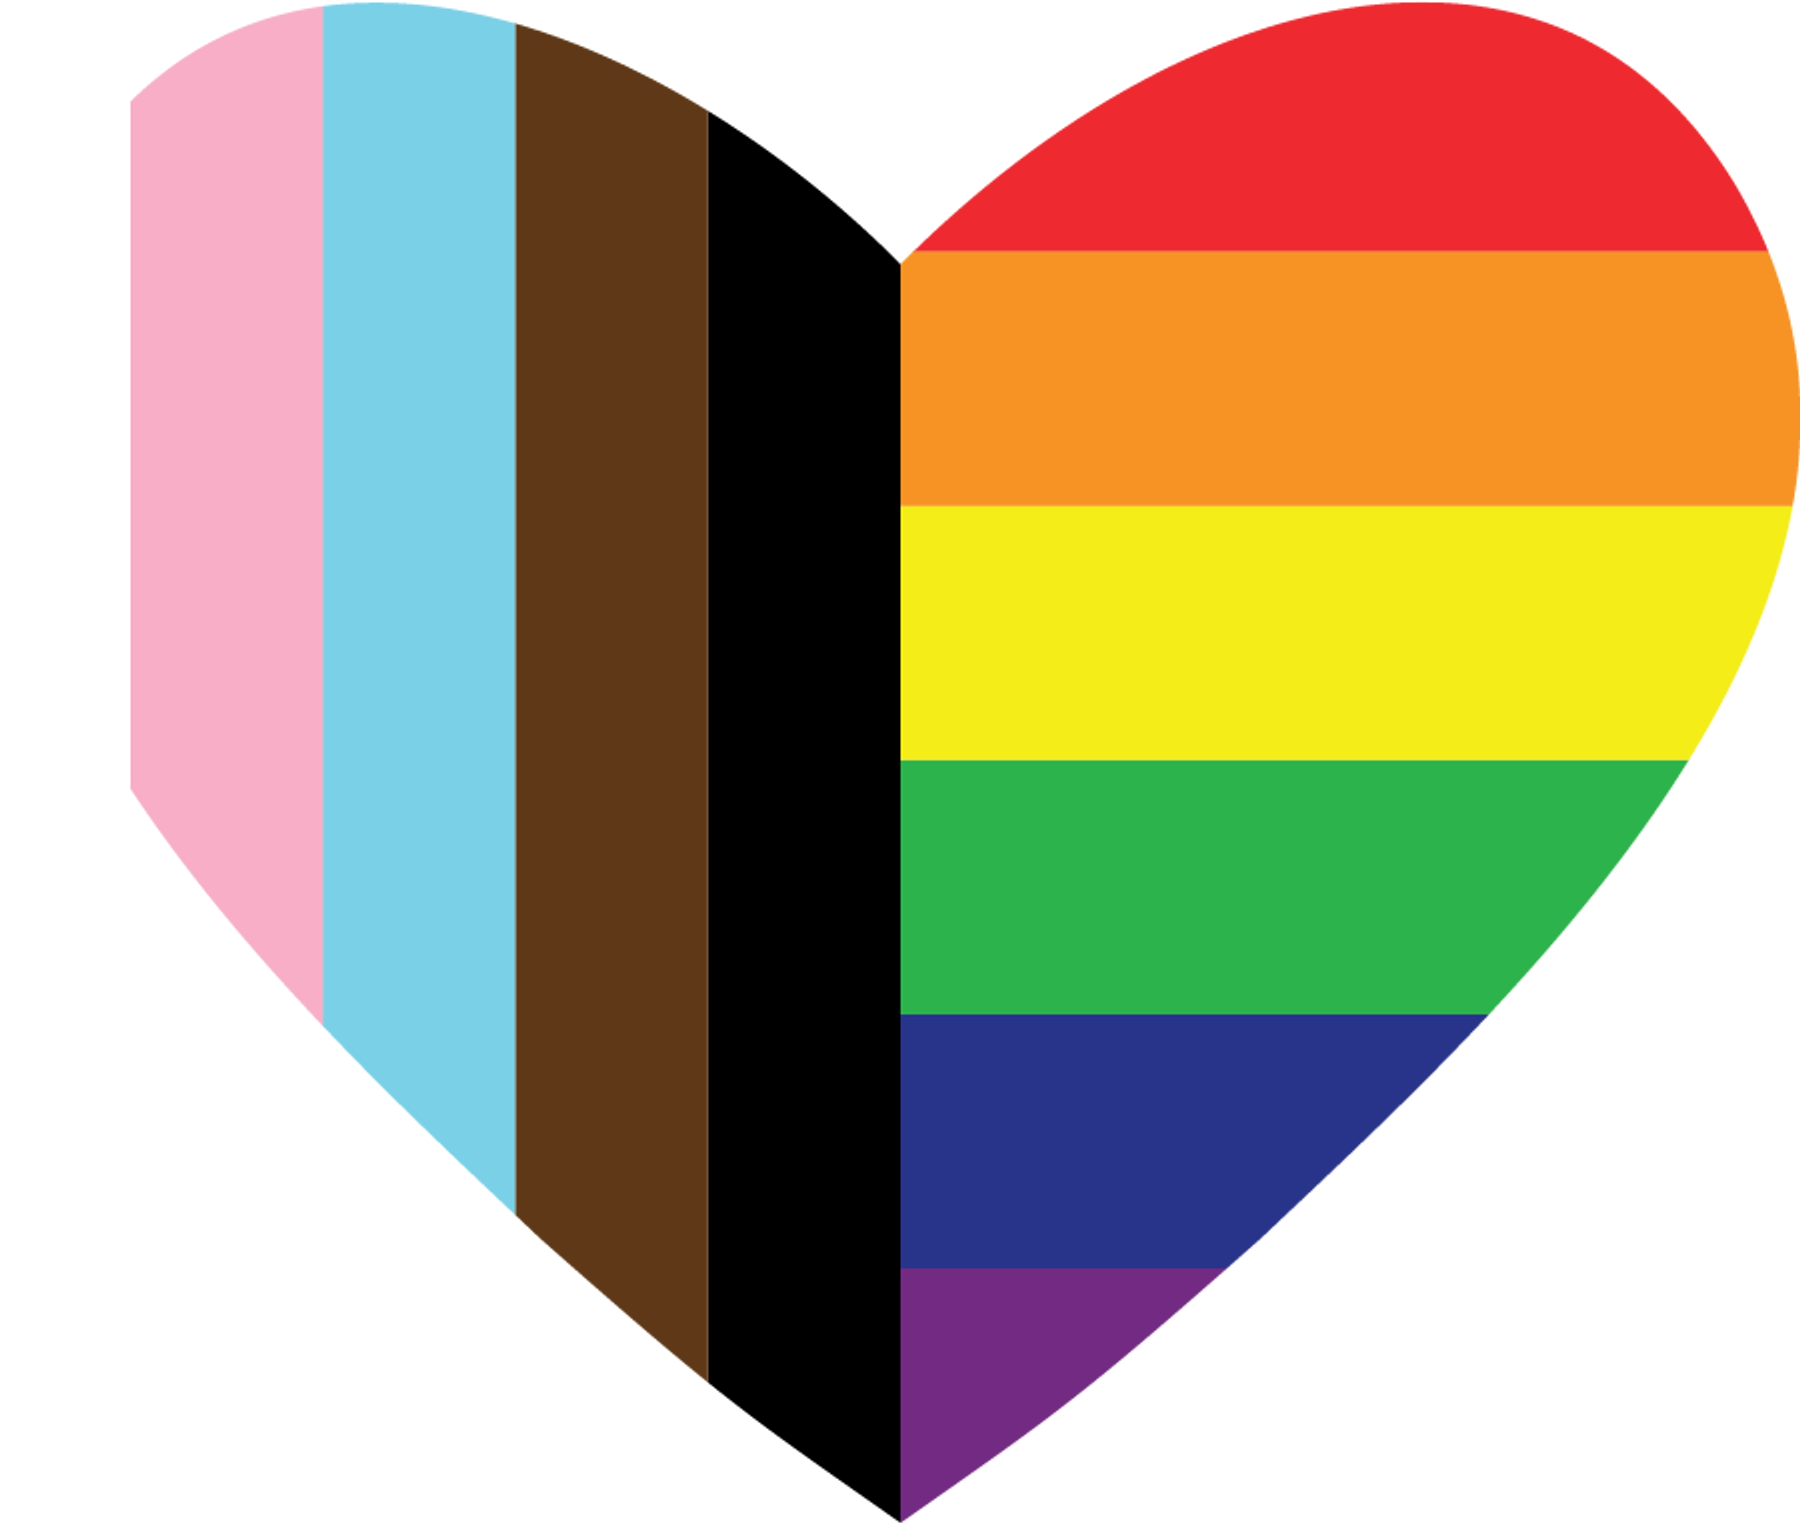 A heart icon with pride and trans pride colours, representing LGBTQ2S+ inclusion.